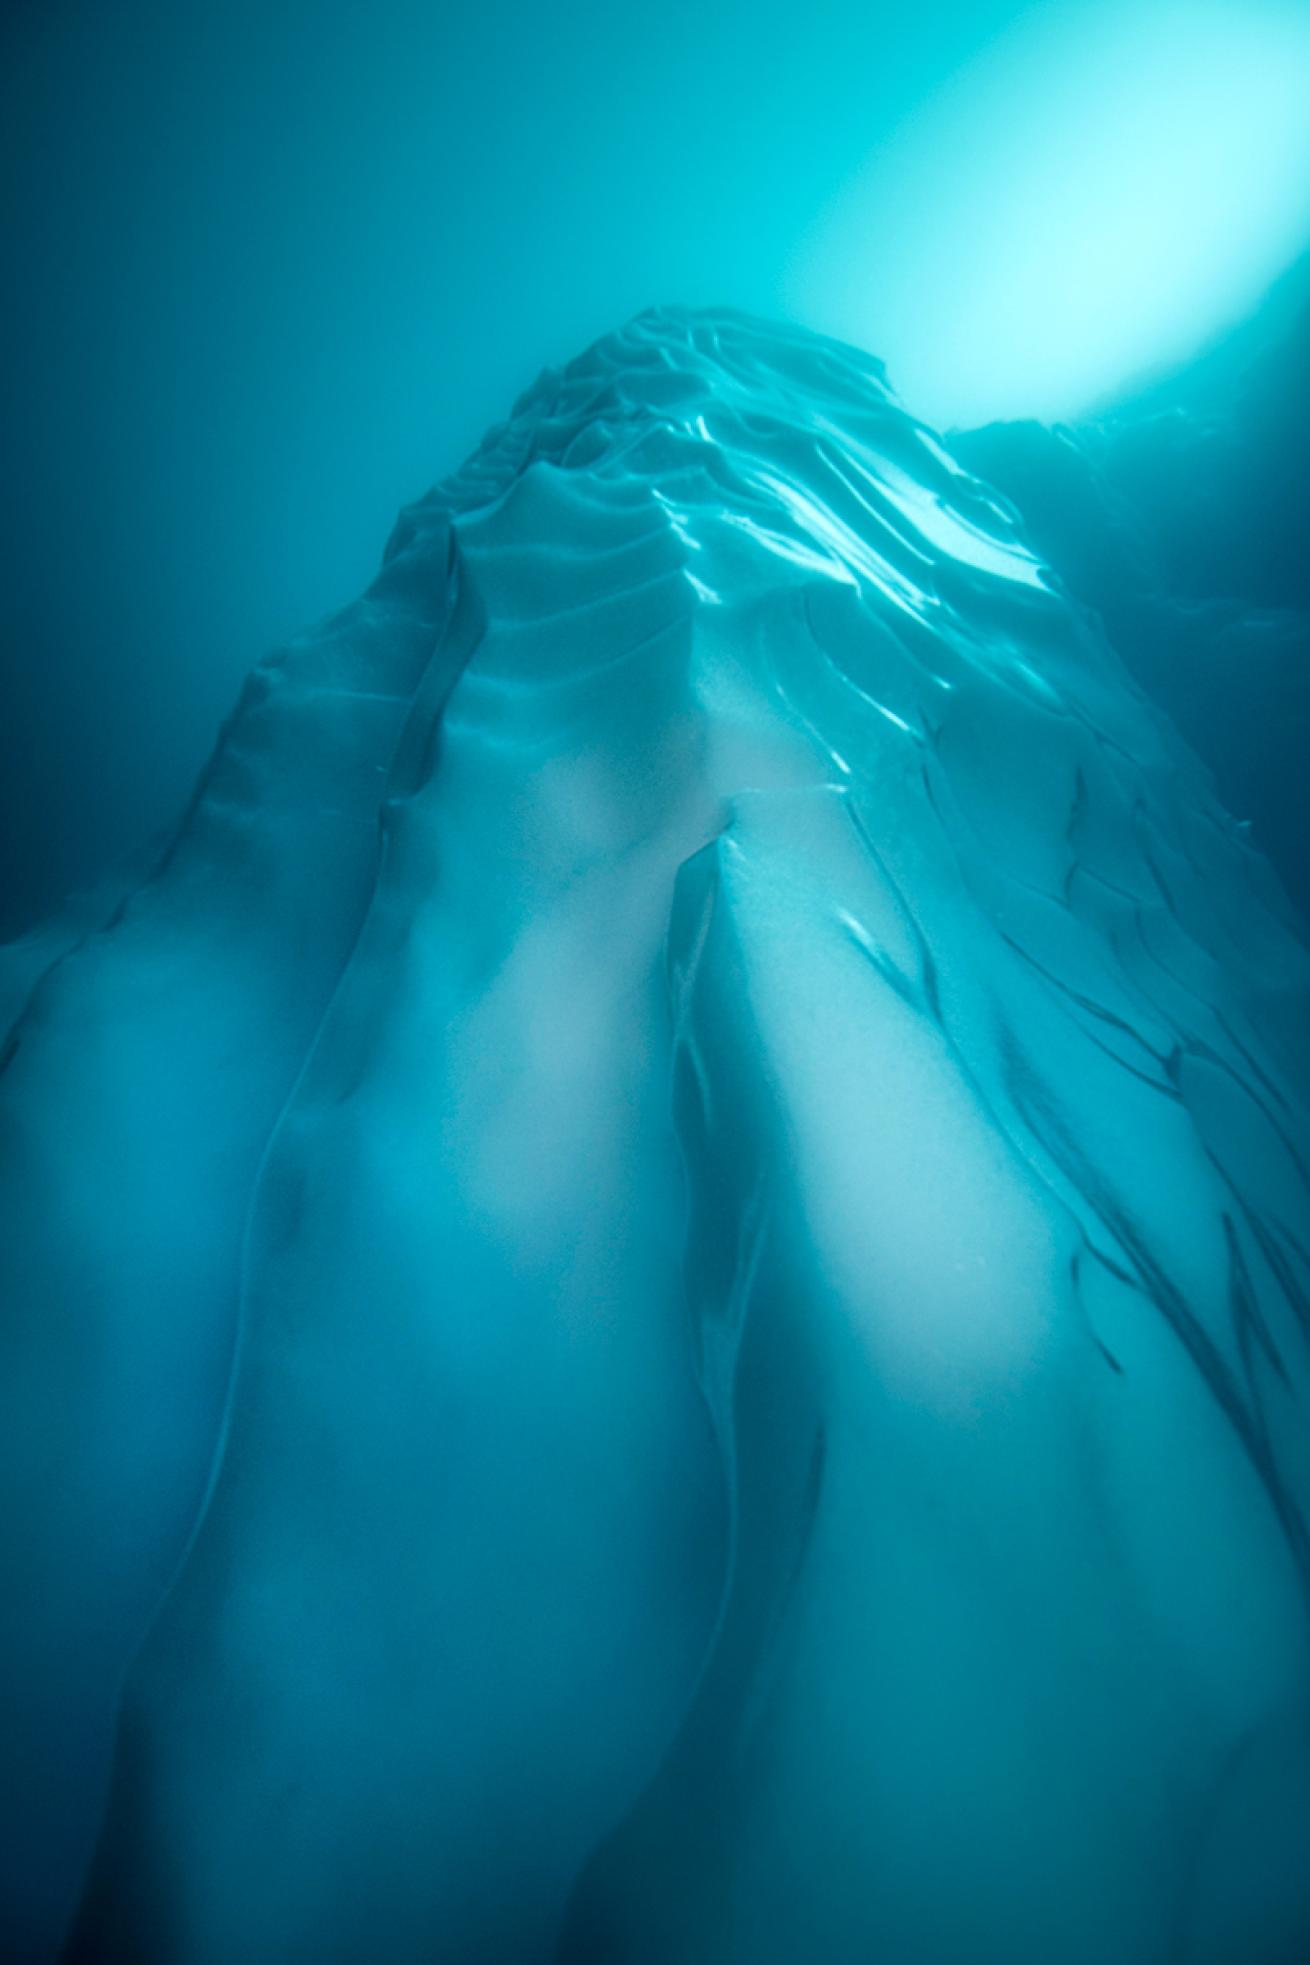 Iceberg underwater